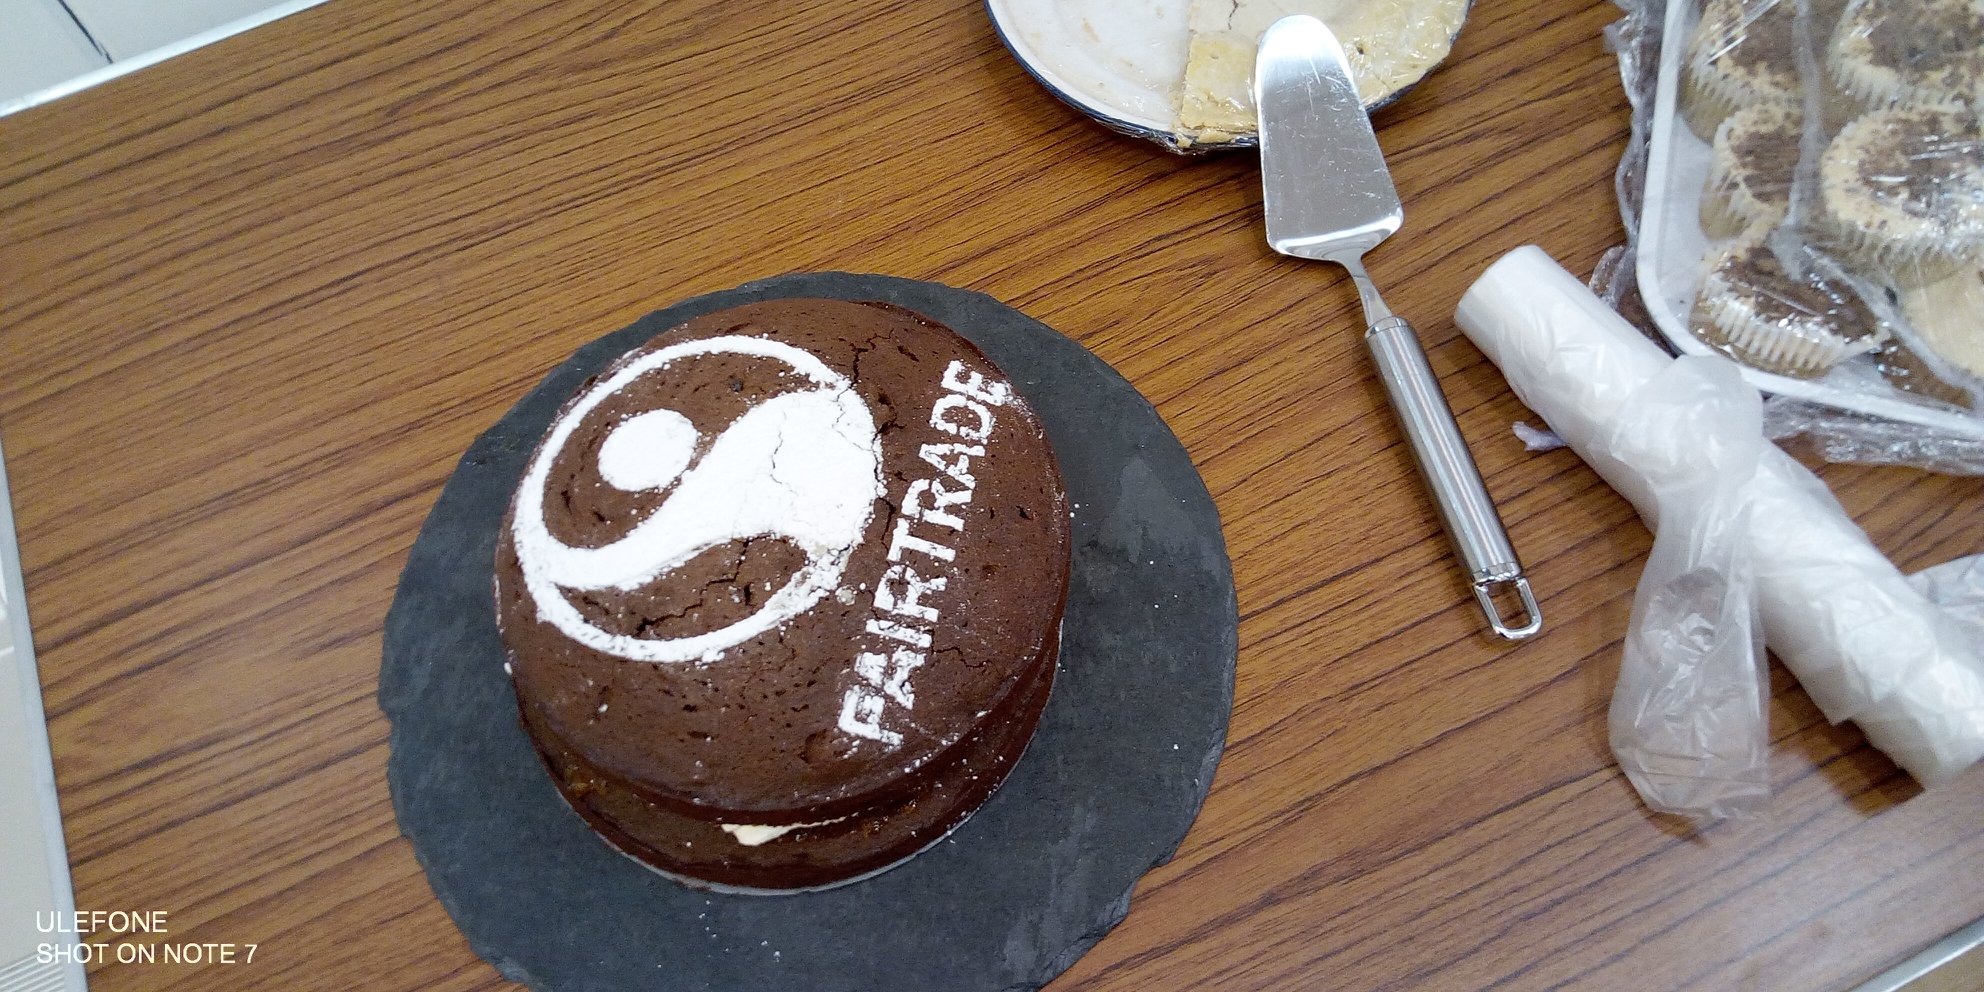 Fairtrade Cake at the Churches Service